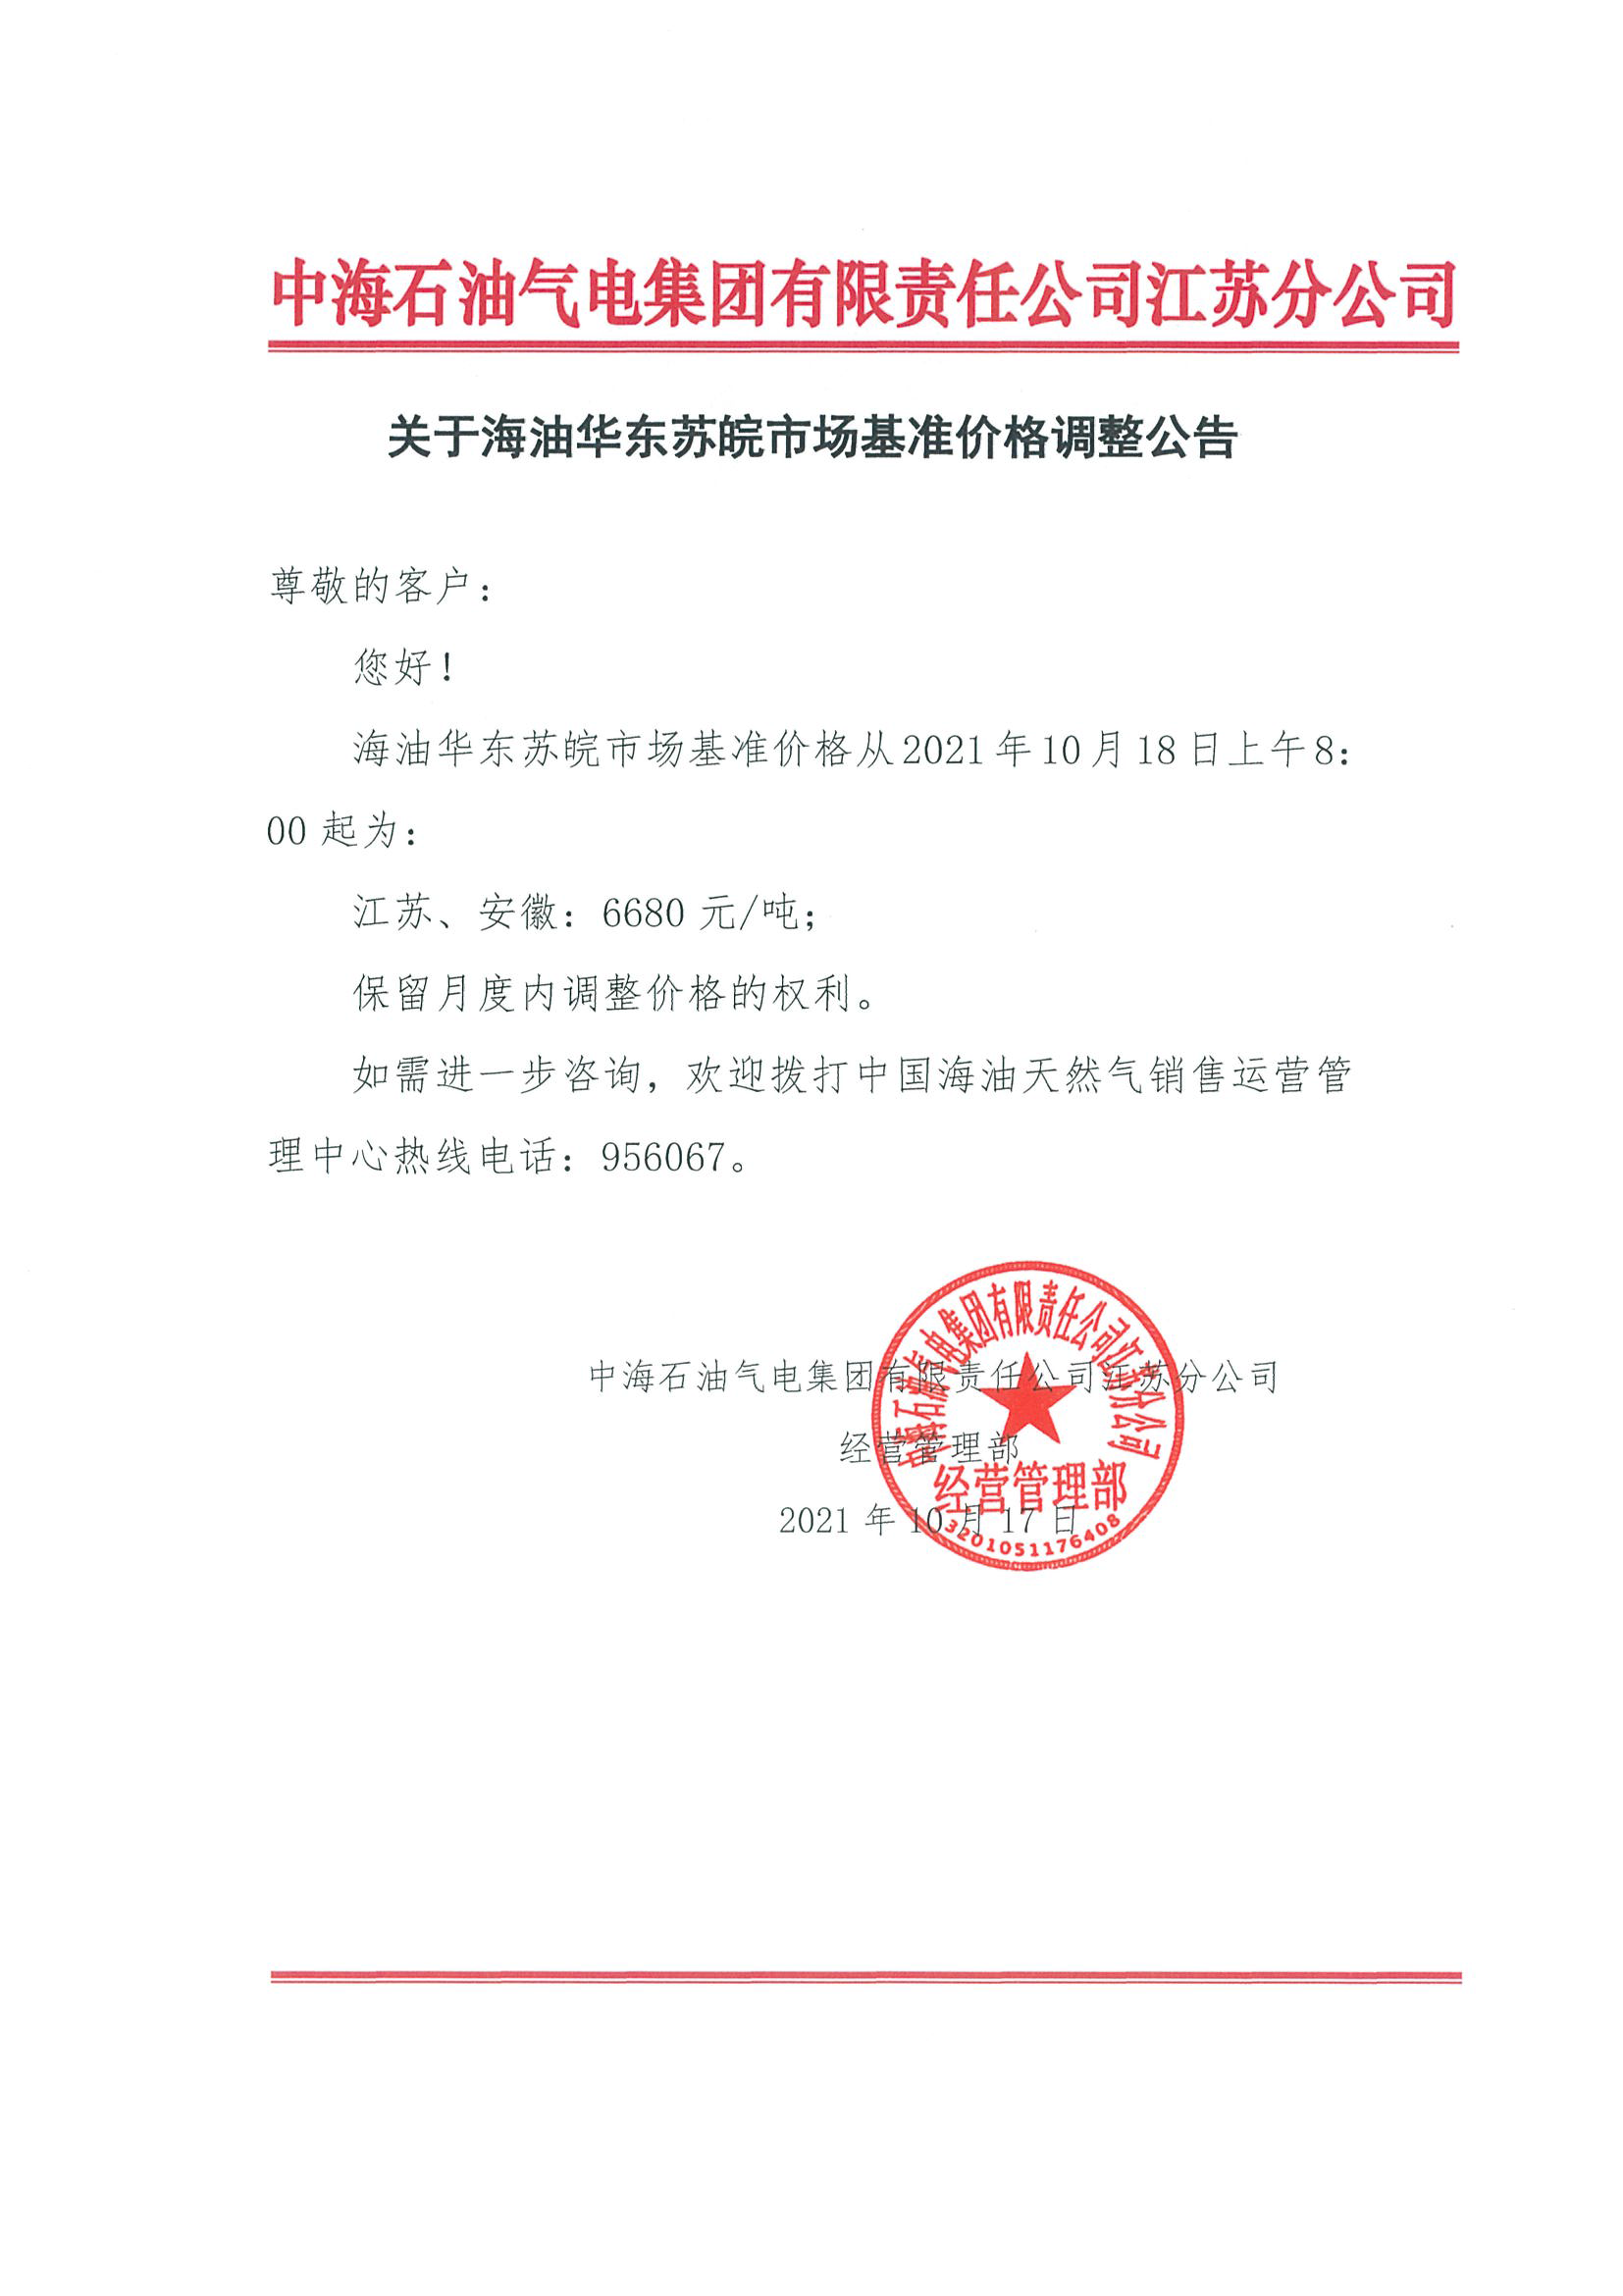 中海油江苏分公司关于10月18日华东苏皖市场价格调整公告12：00.png